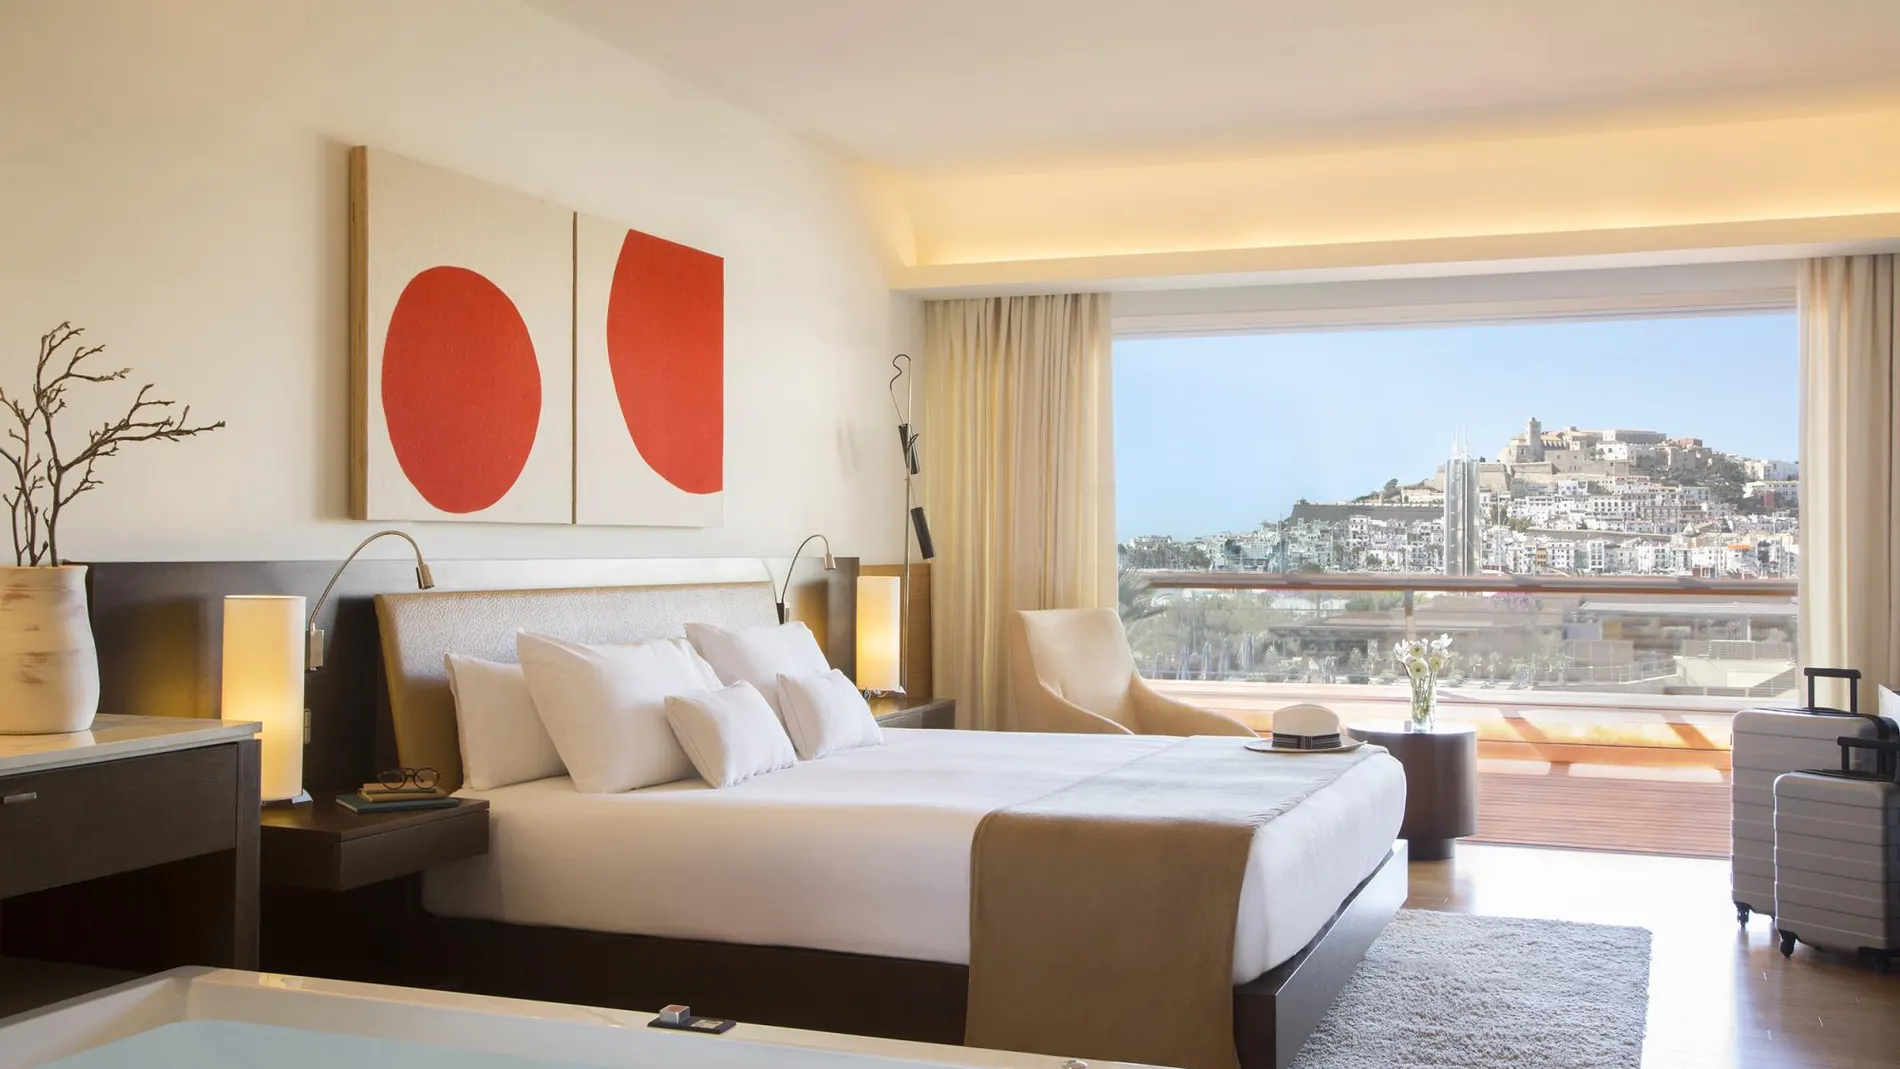 Es el único hotel Gran Lujo de la isla: esta distinción se consigue sacando la máxima puntuación recogida en la Ley del Turismo balear / Ibiza Gran Hotel